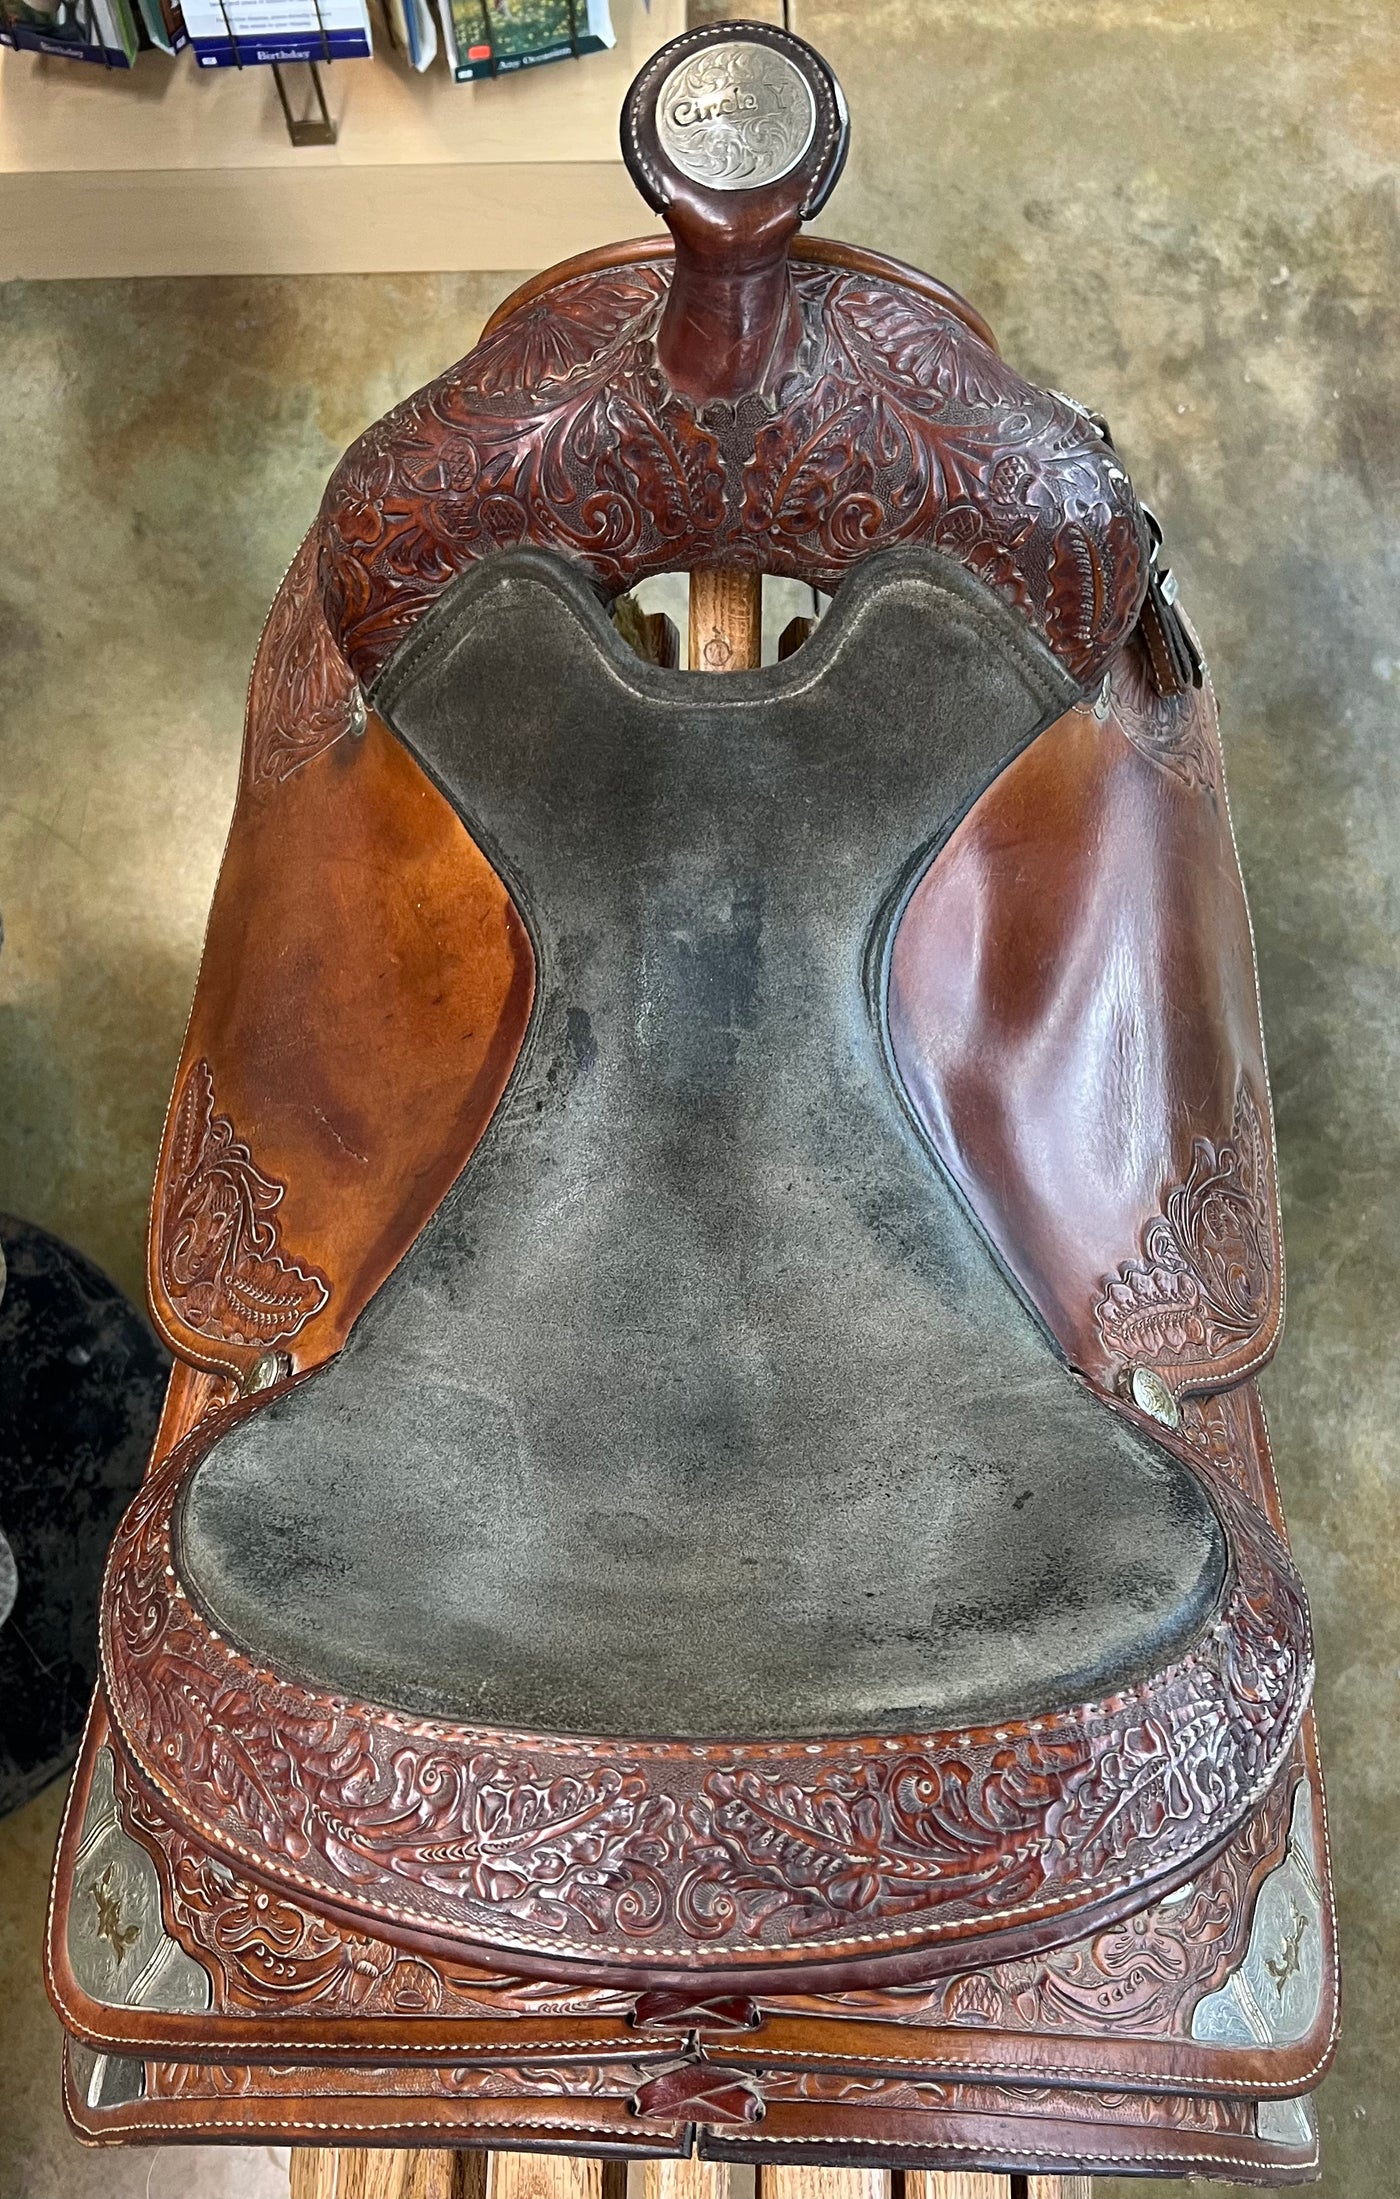 Used Circle Y show saddle, 16"